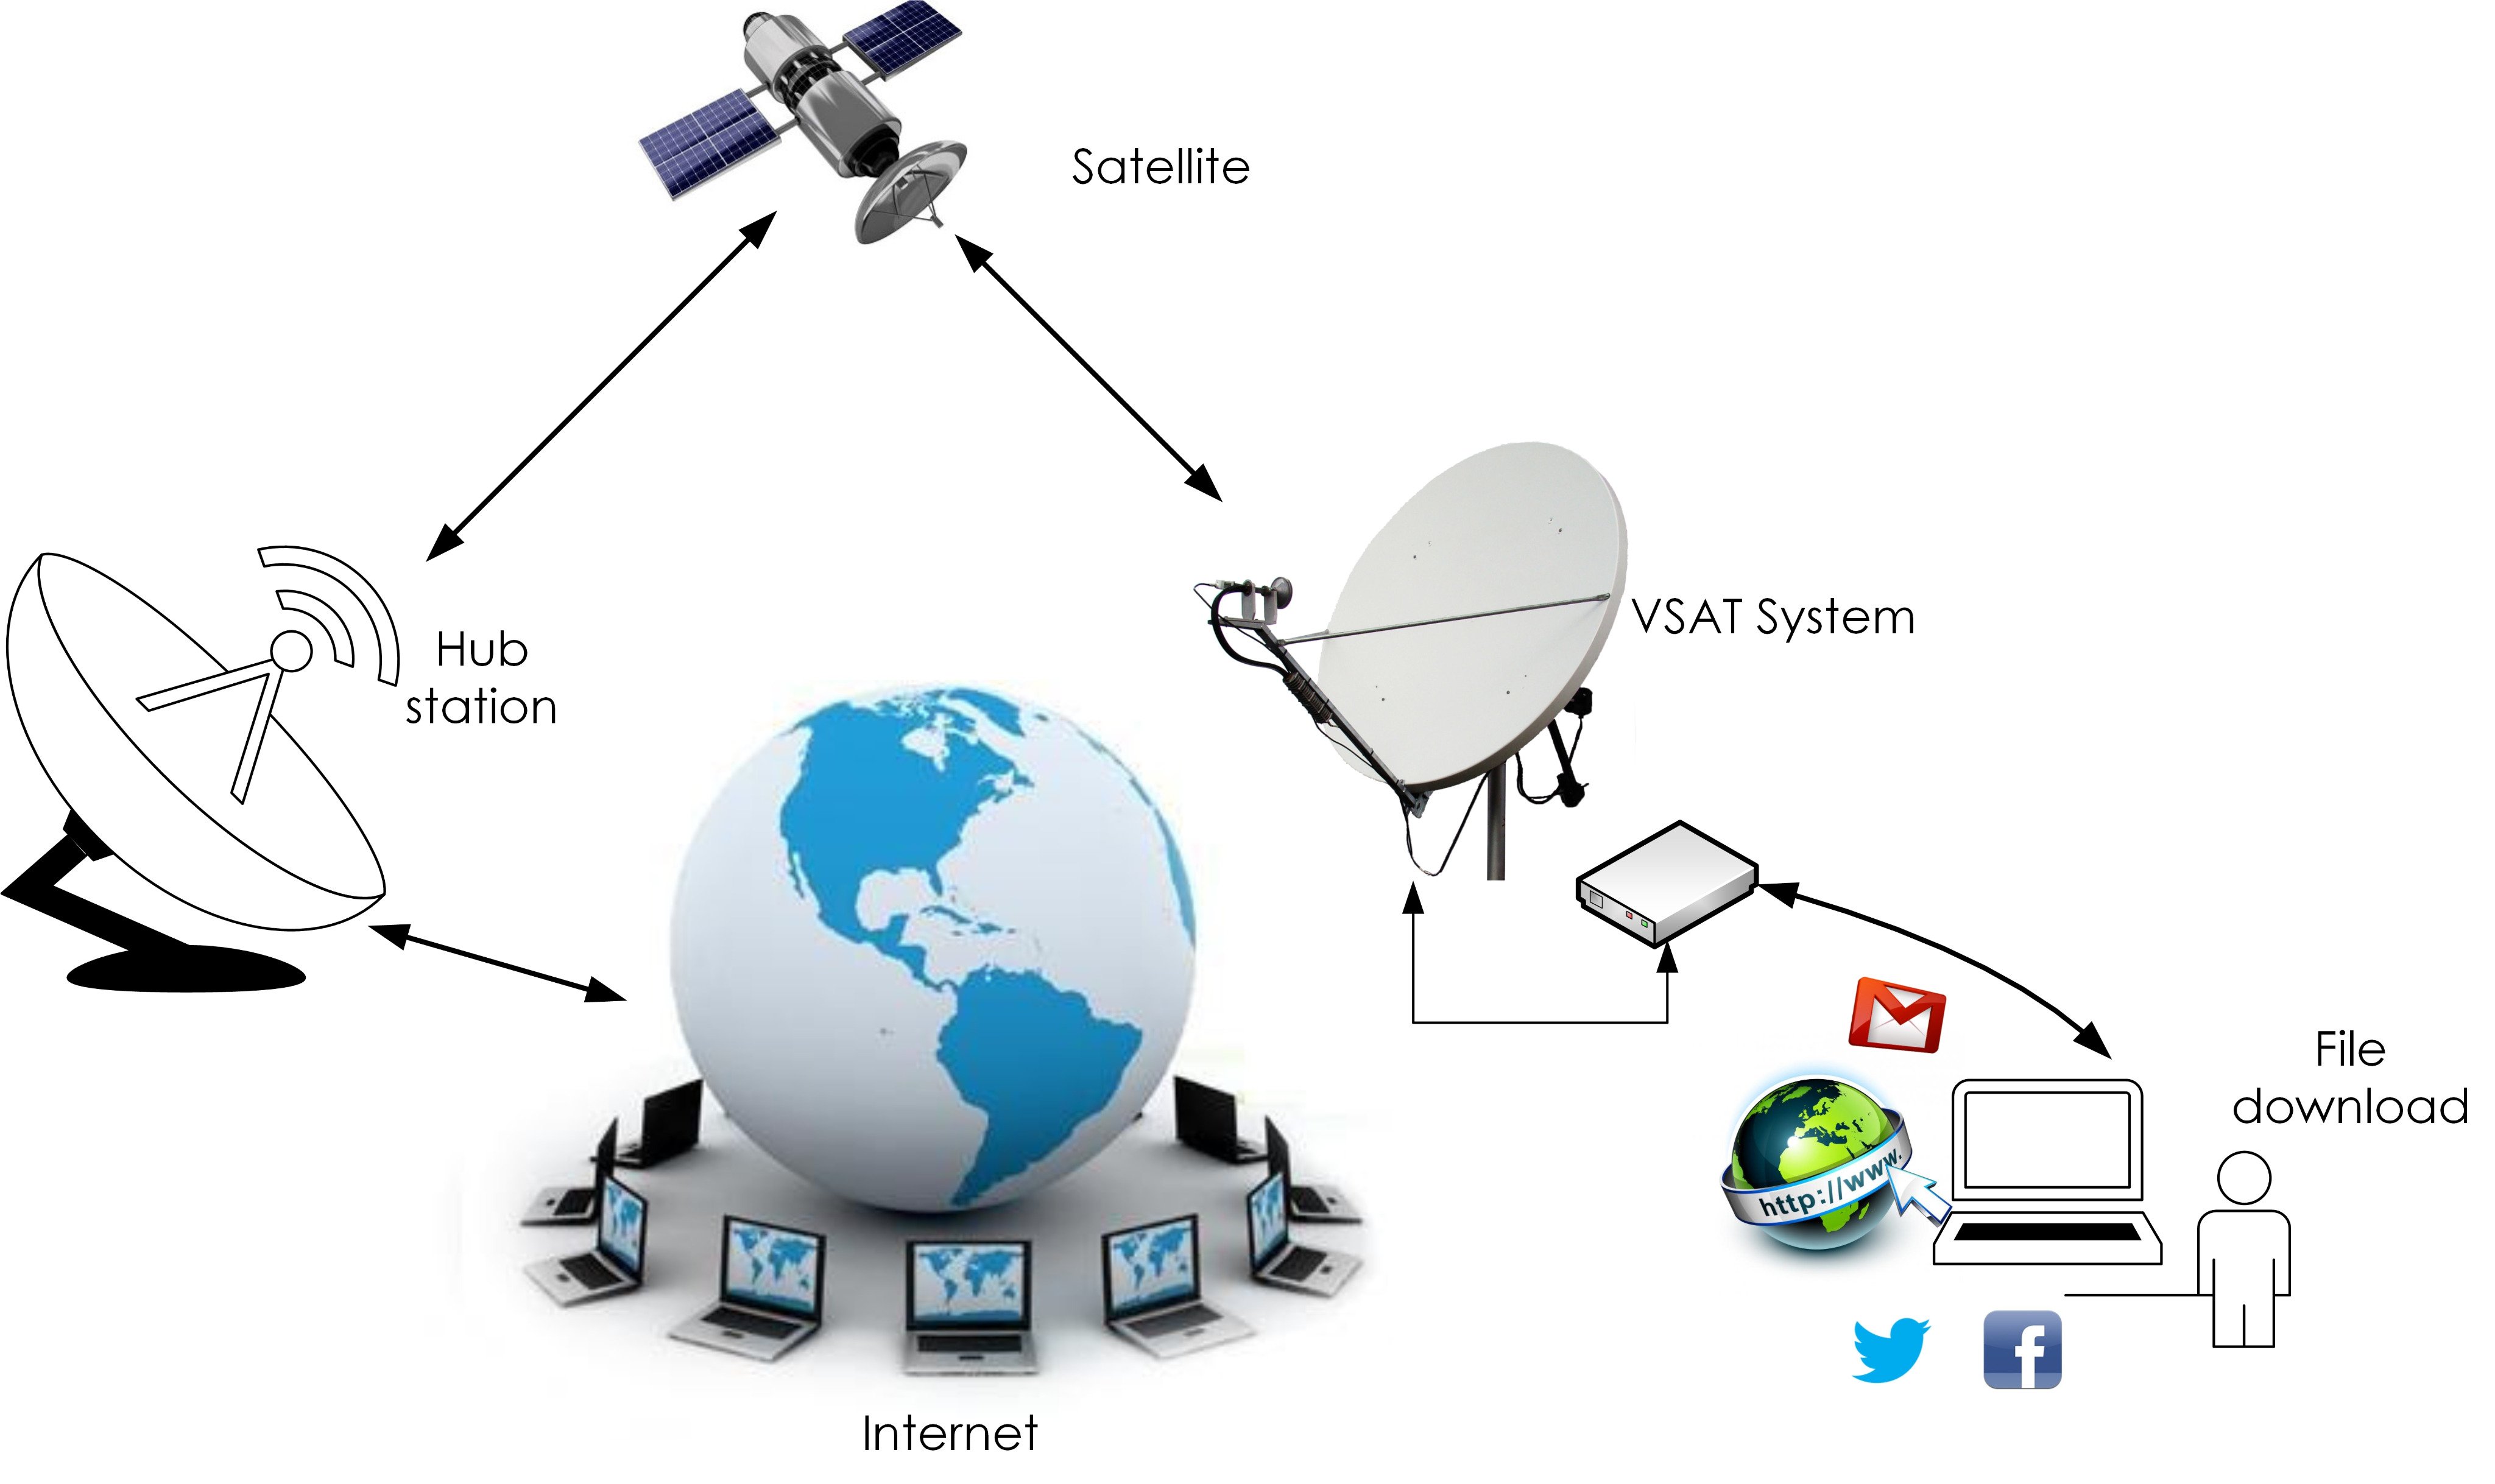 Системы связи интернет. VSAT станция спутниковой связи. Спутниковая связь VSAT схема. Спутниковая система связи VSAT структурная схема. Станция VSAT схема.